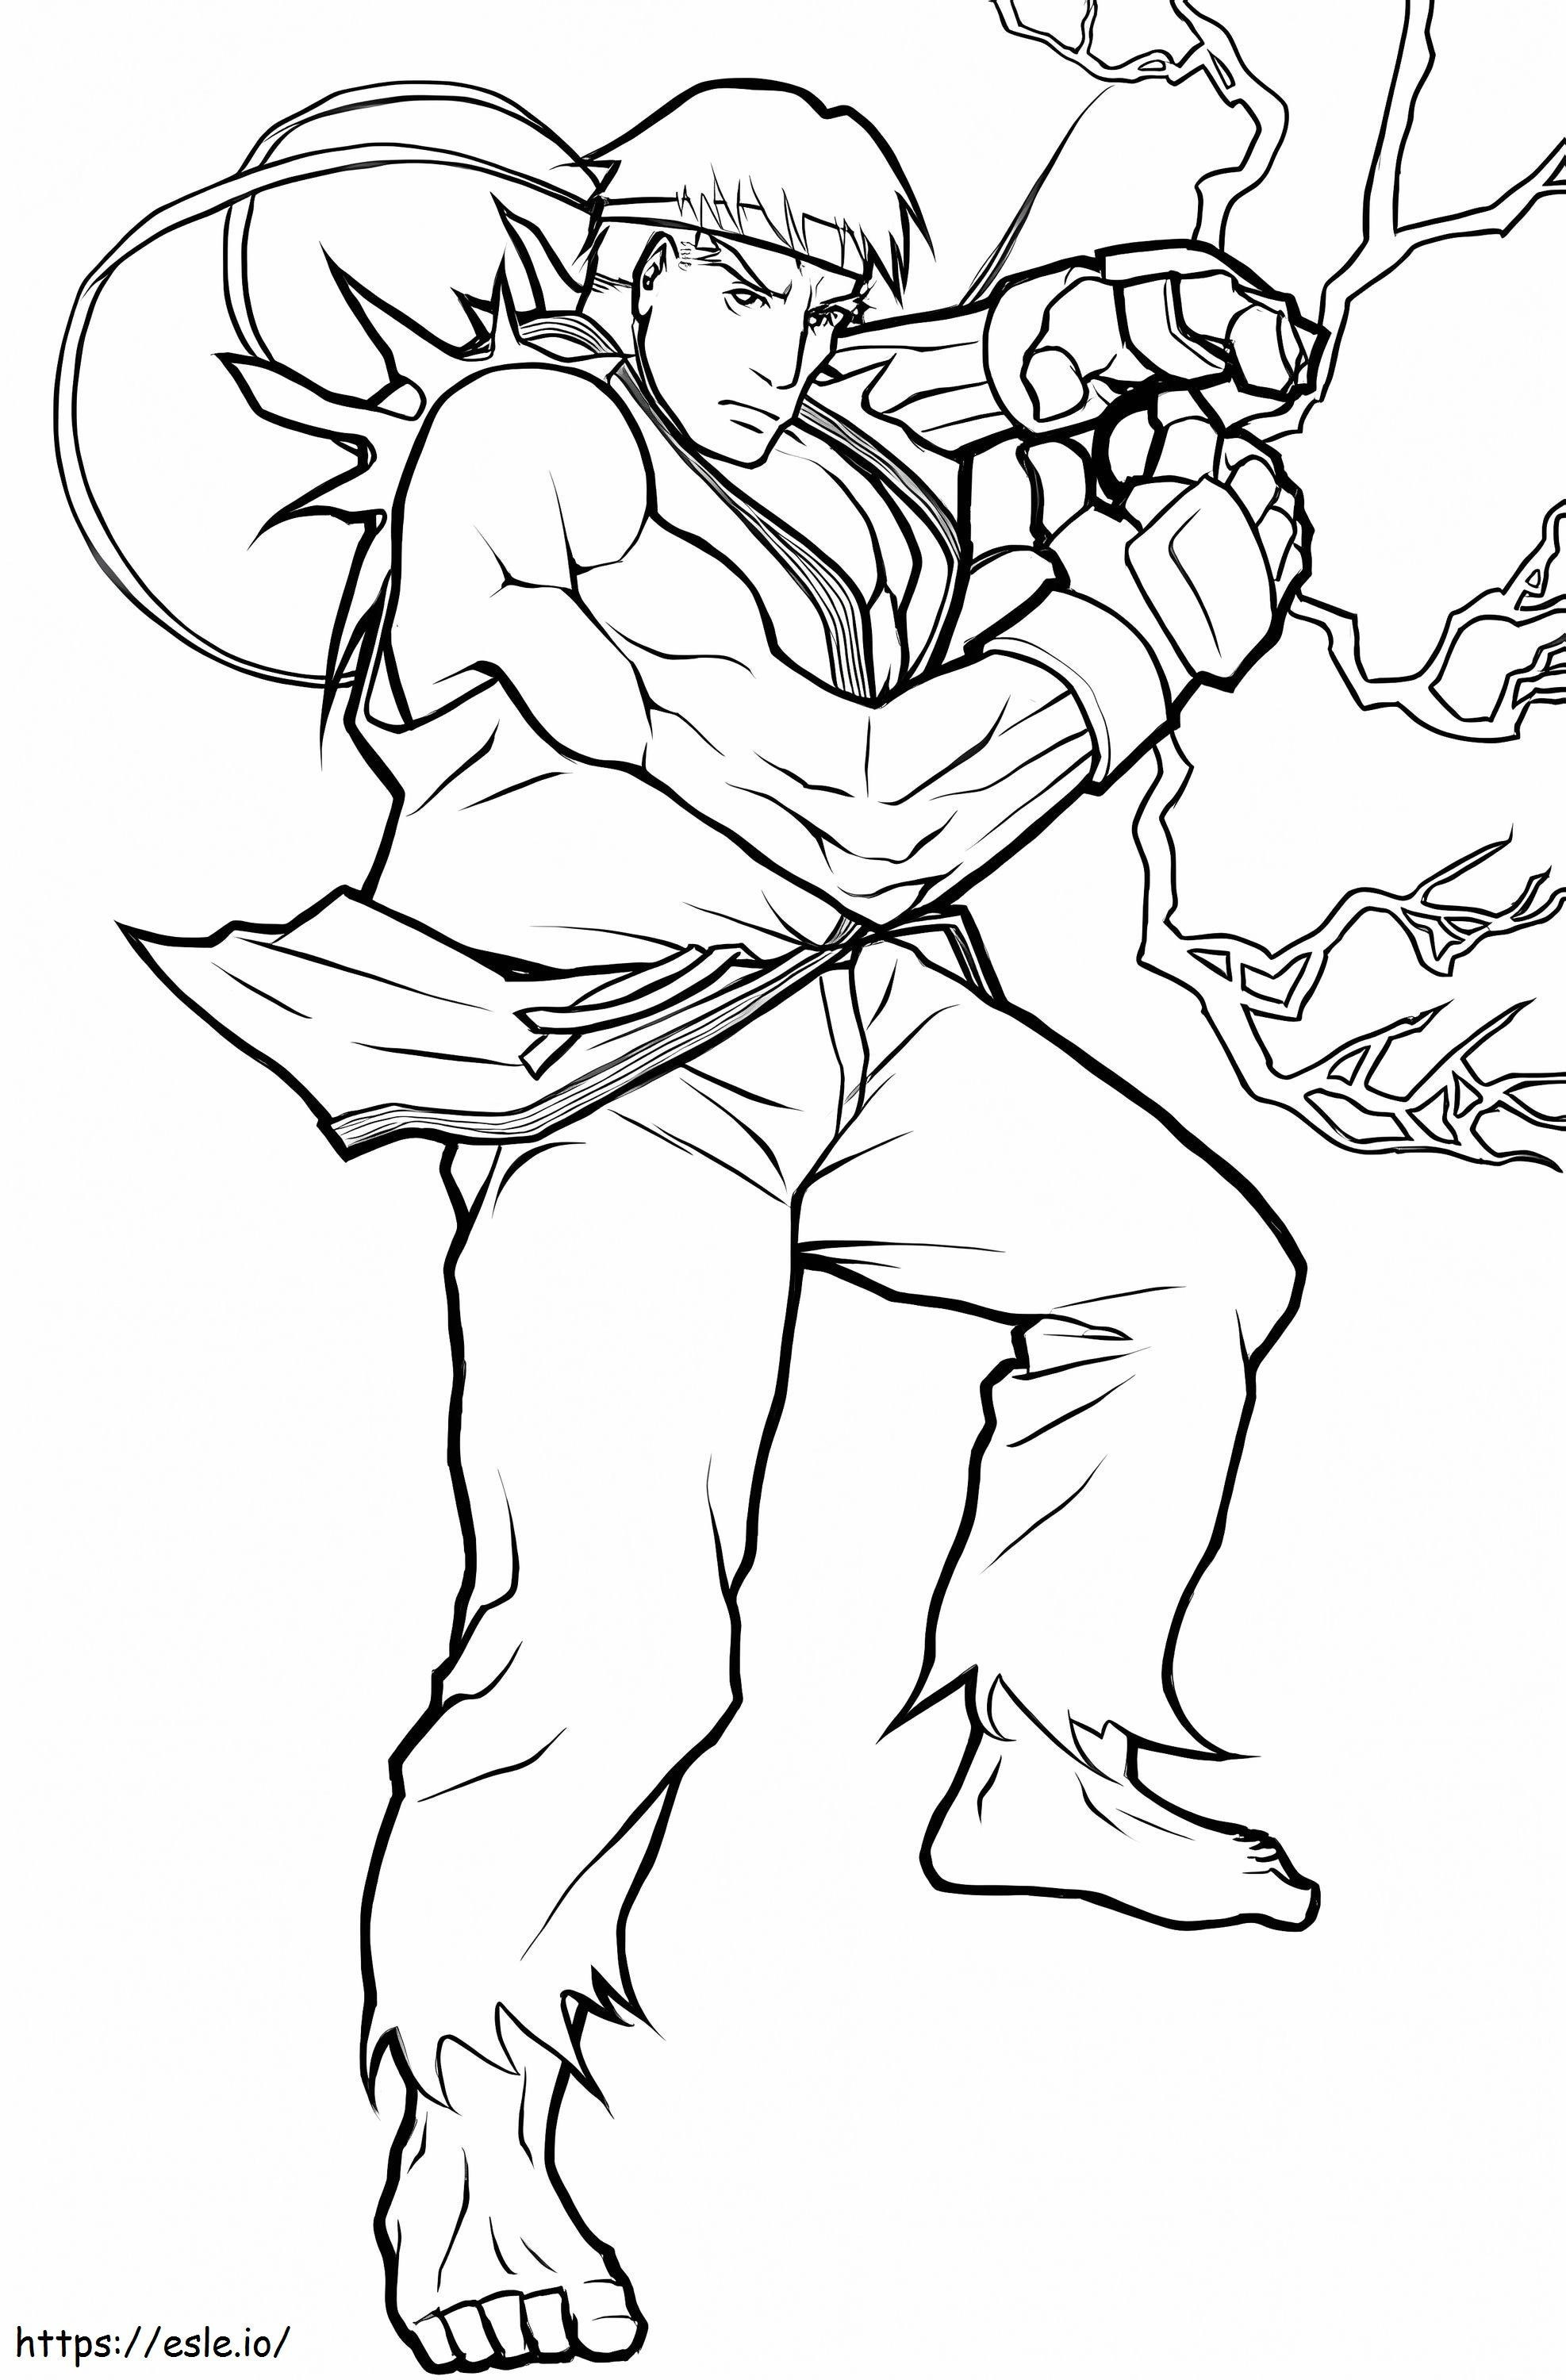 Ryu Poder de colorat